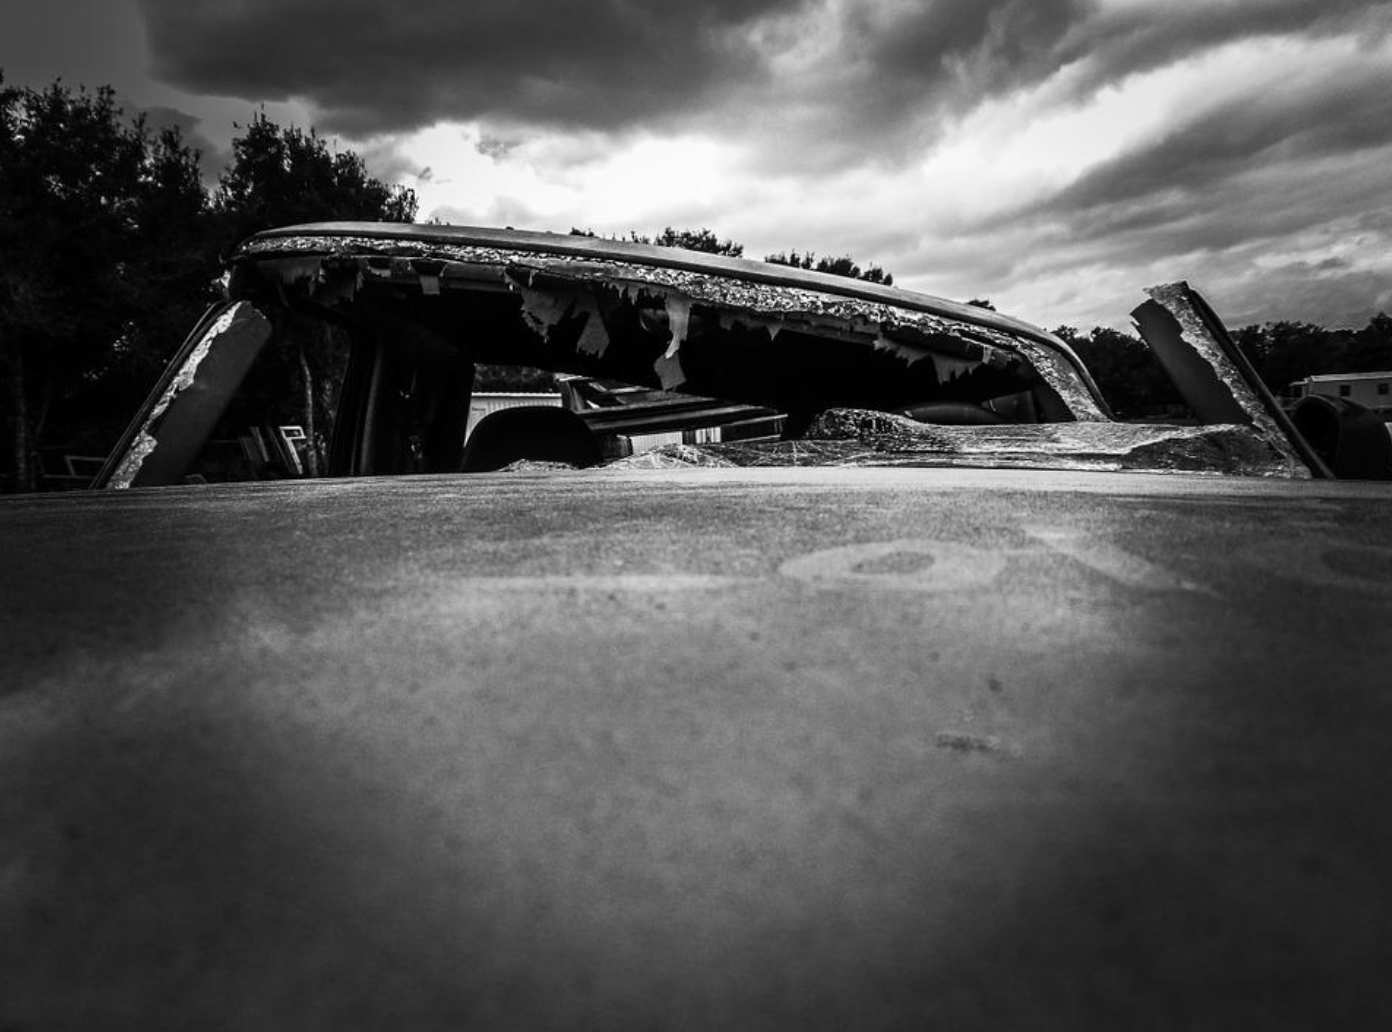 Upclose of crashed car; image by JodyDellDavis, via Pixabay.com.